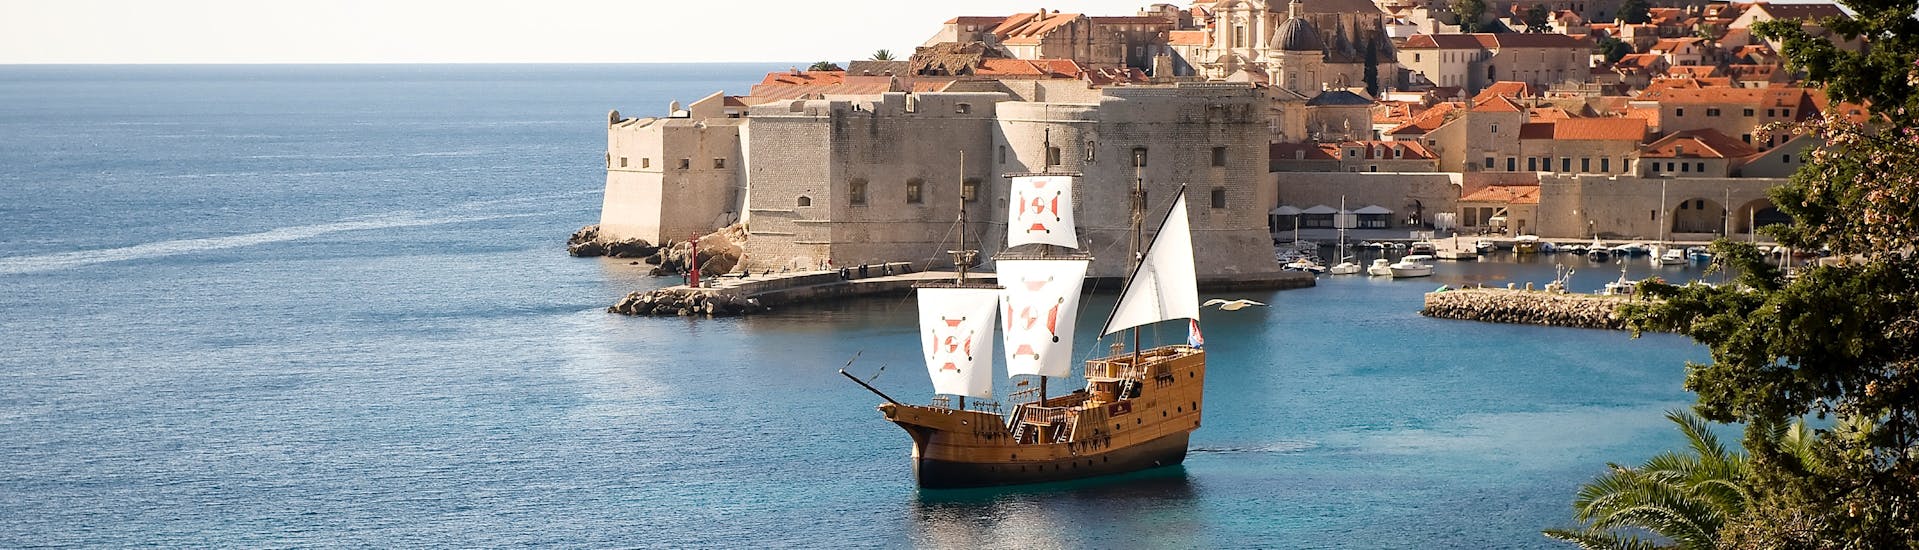 La tradizionale barca Karaka sull'acqua prima del tramonto con Karaka Dubrovnik.